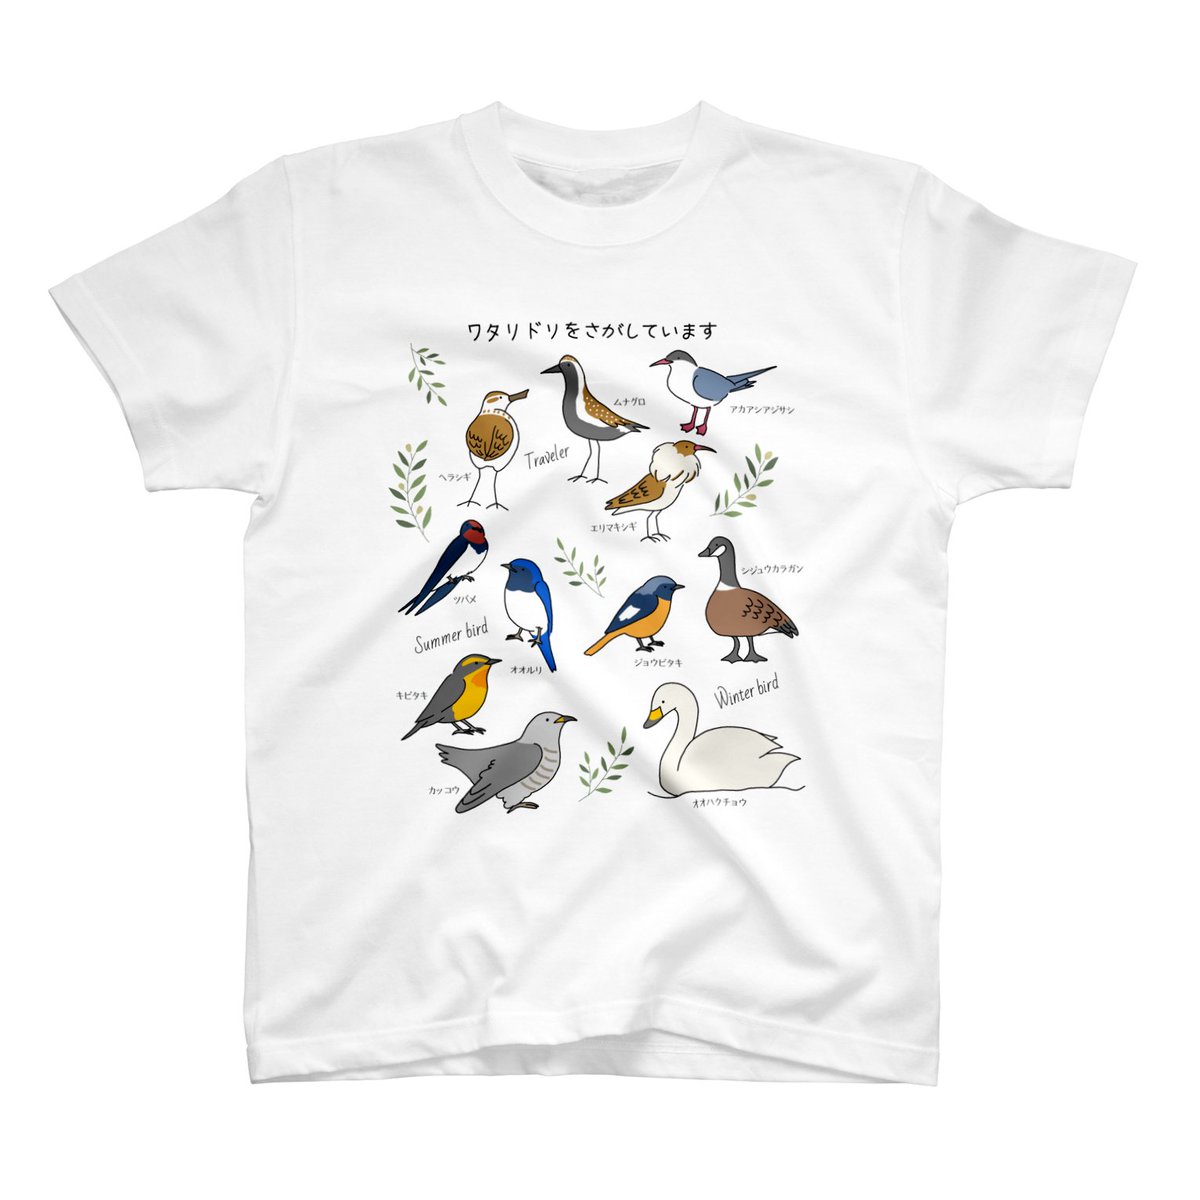 鳥さんが好きで、Tシャツ色々作っているので見てもらえたら嬉しいな。

https://t.co/9YZ6FeZFDi

#野鳥
#鳥が好き 